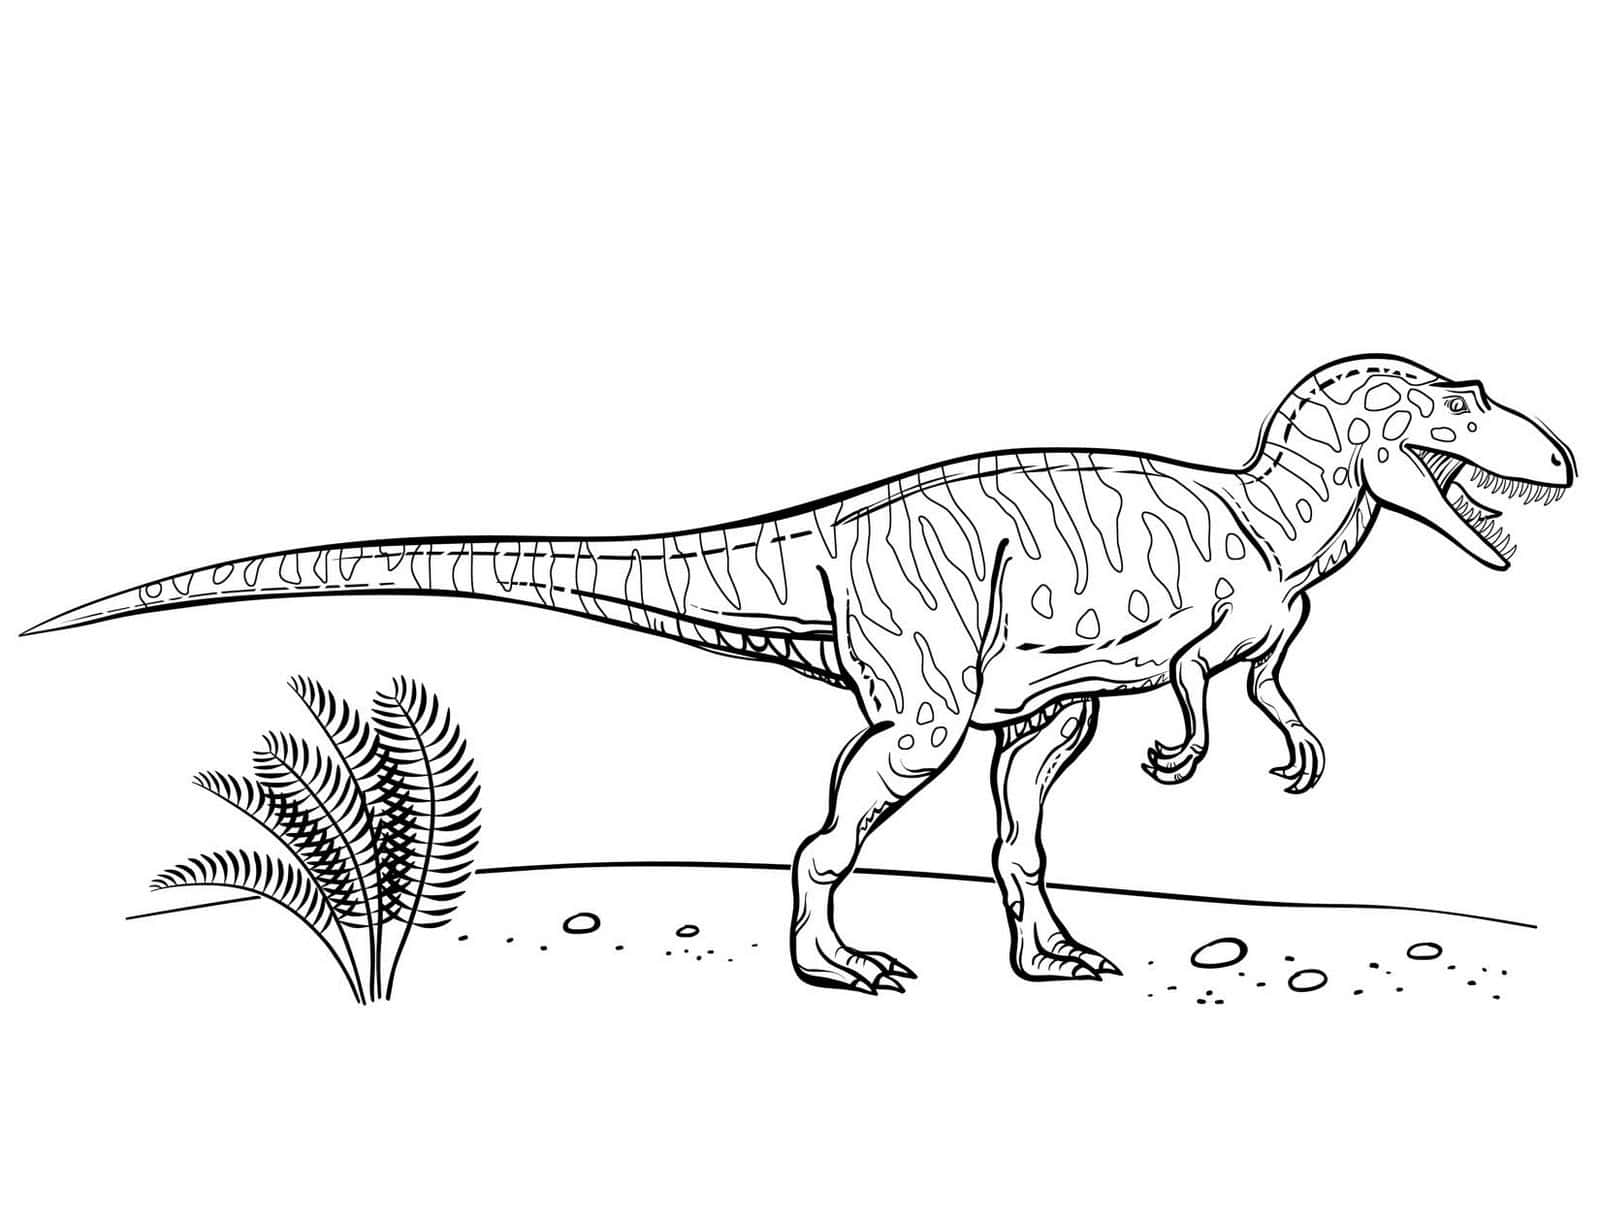 Unapagina Da Colorare Di Un Dinosauro T-rex